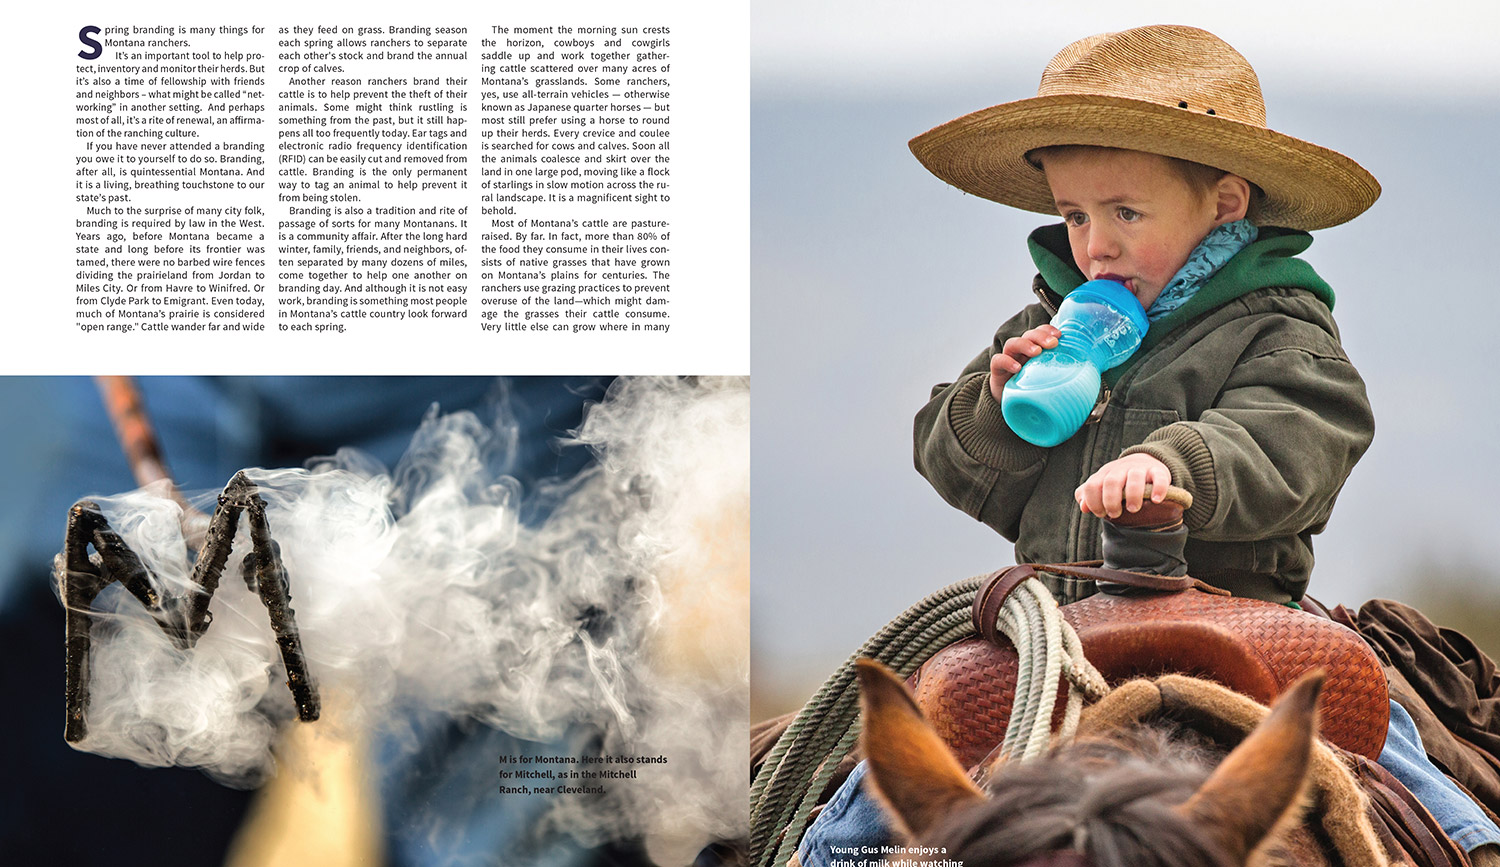 Montana-Magazine-Branding-Article-20180418-Small-2.jpg